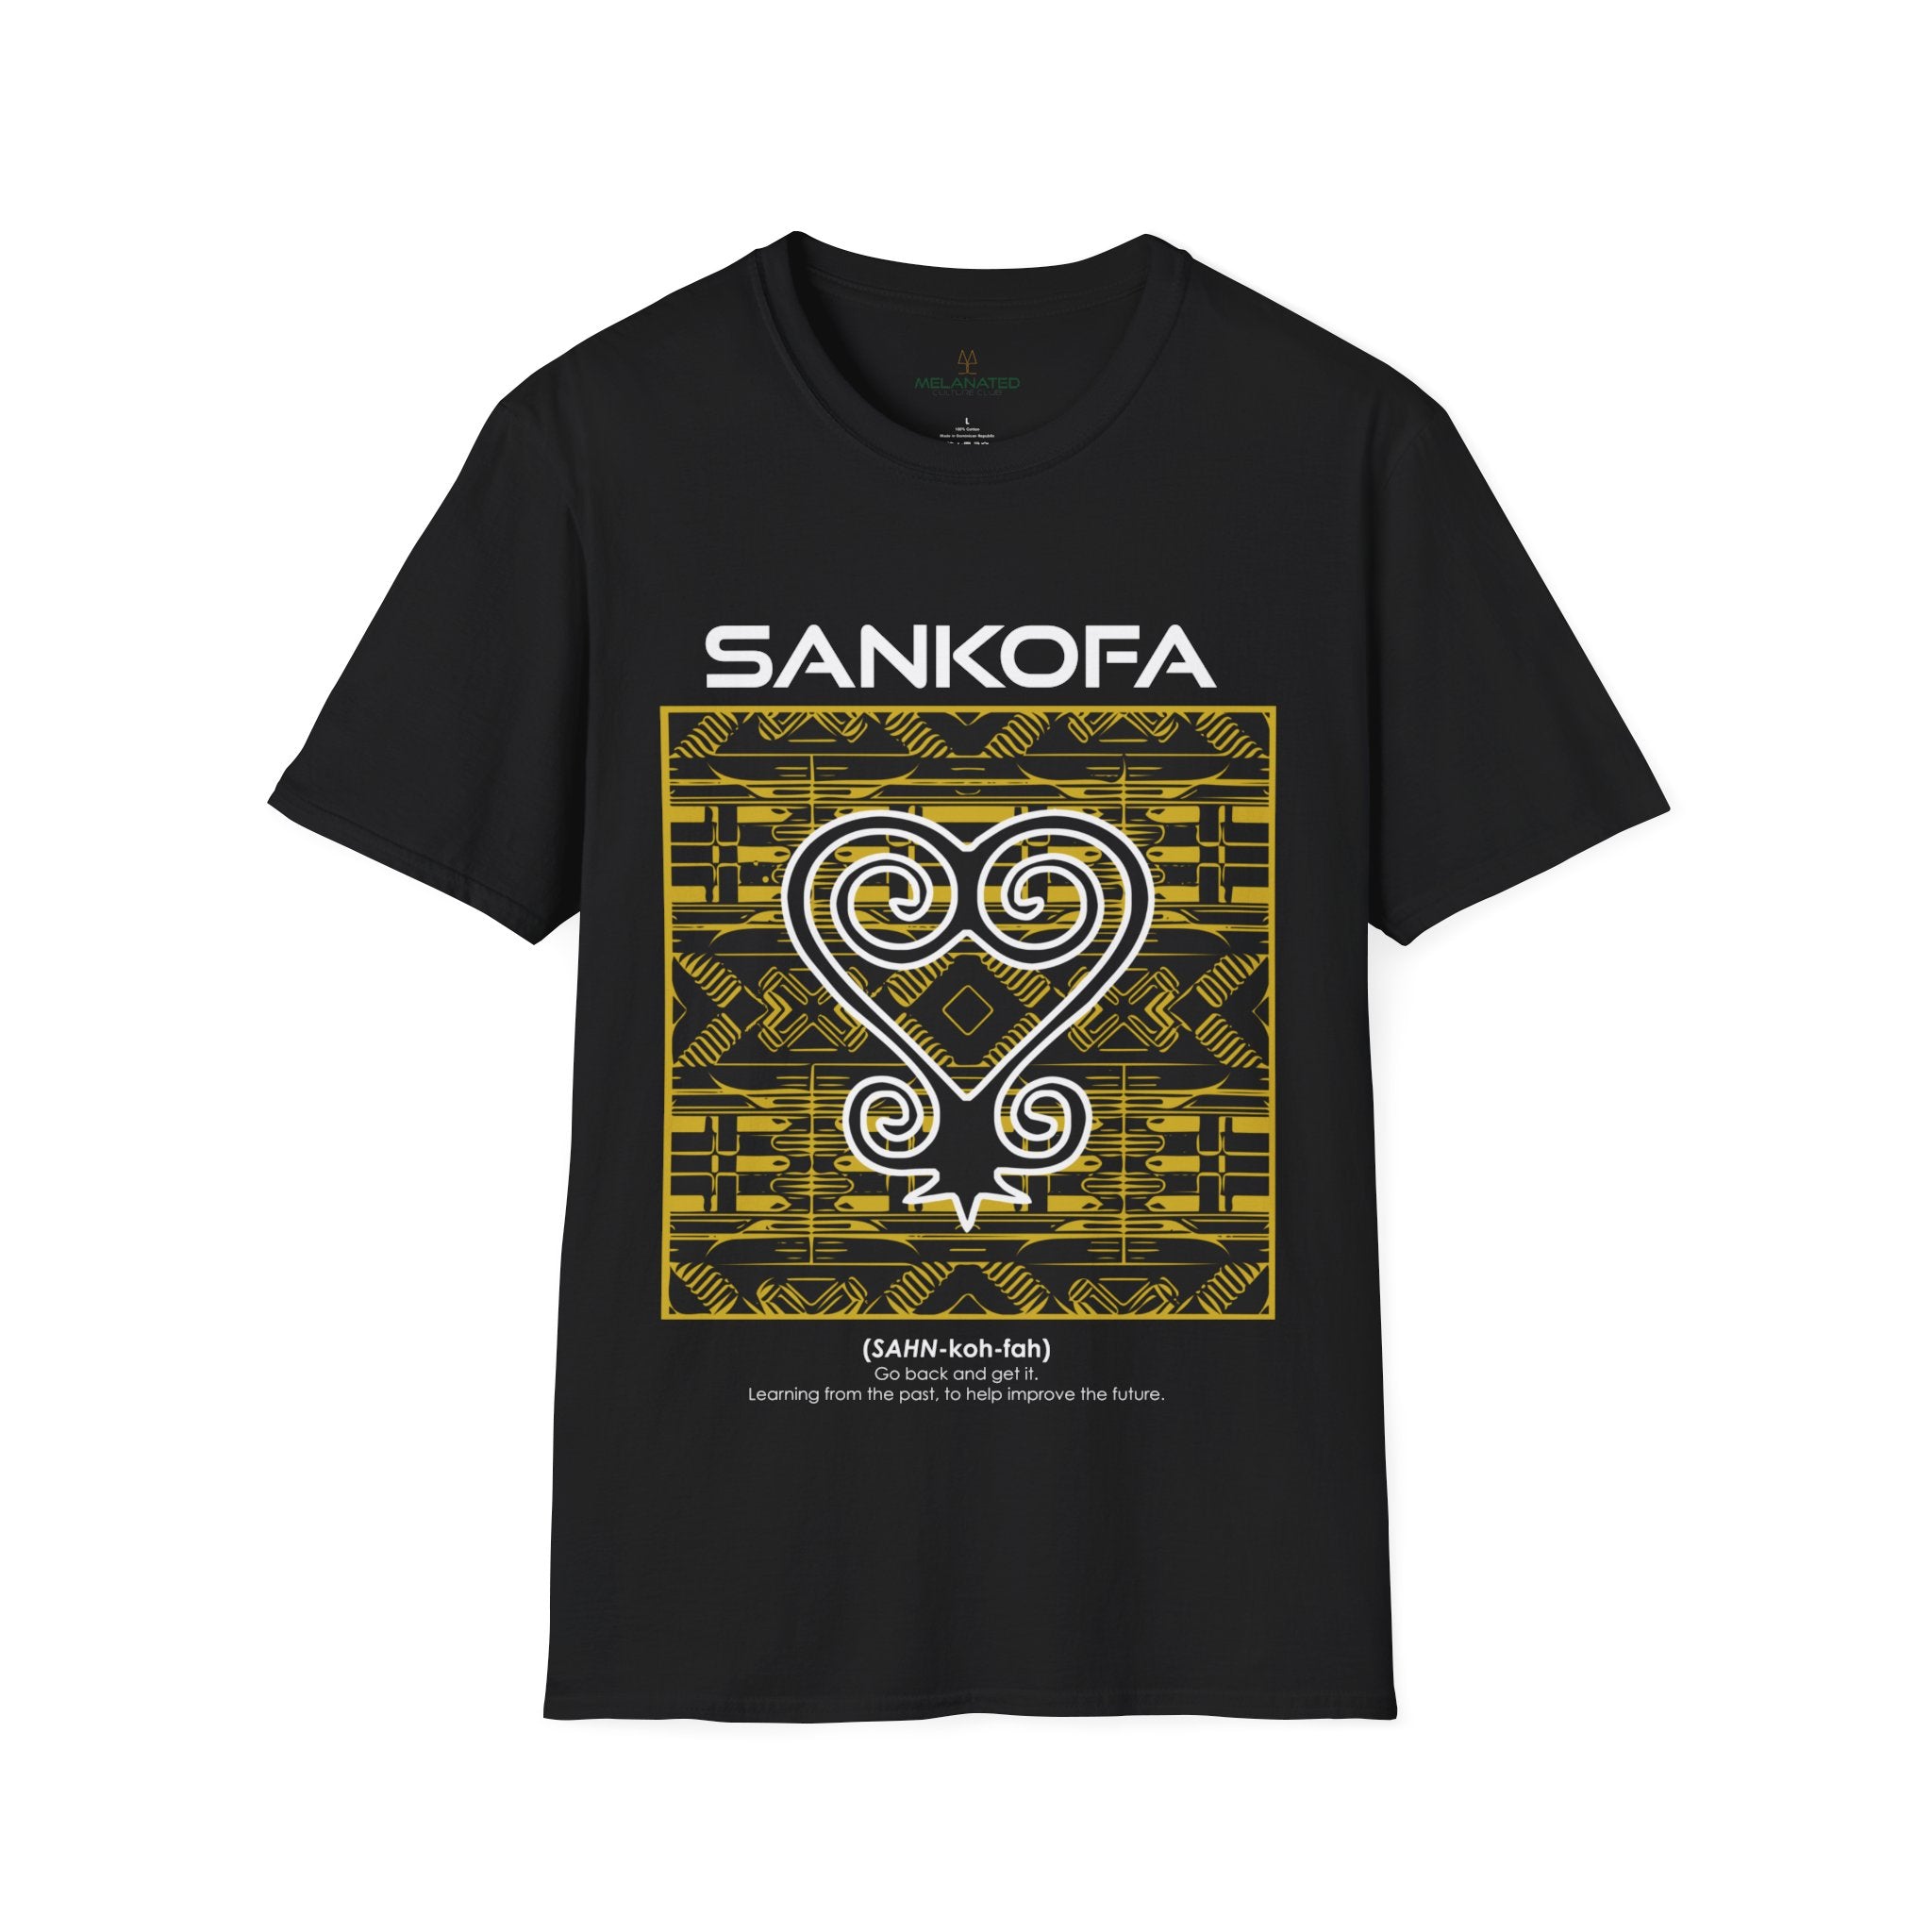 Adinka Sankofa African Tee Shirt in black.